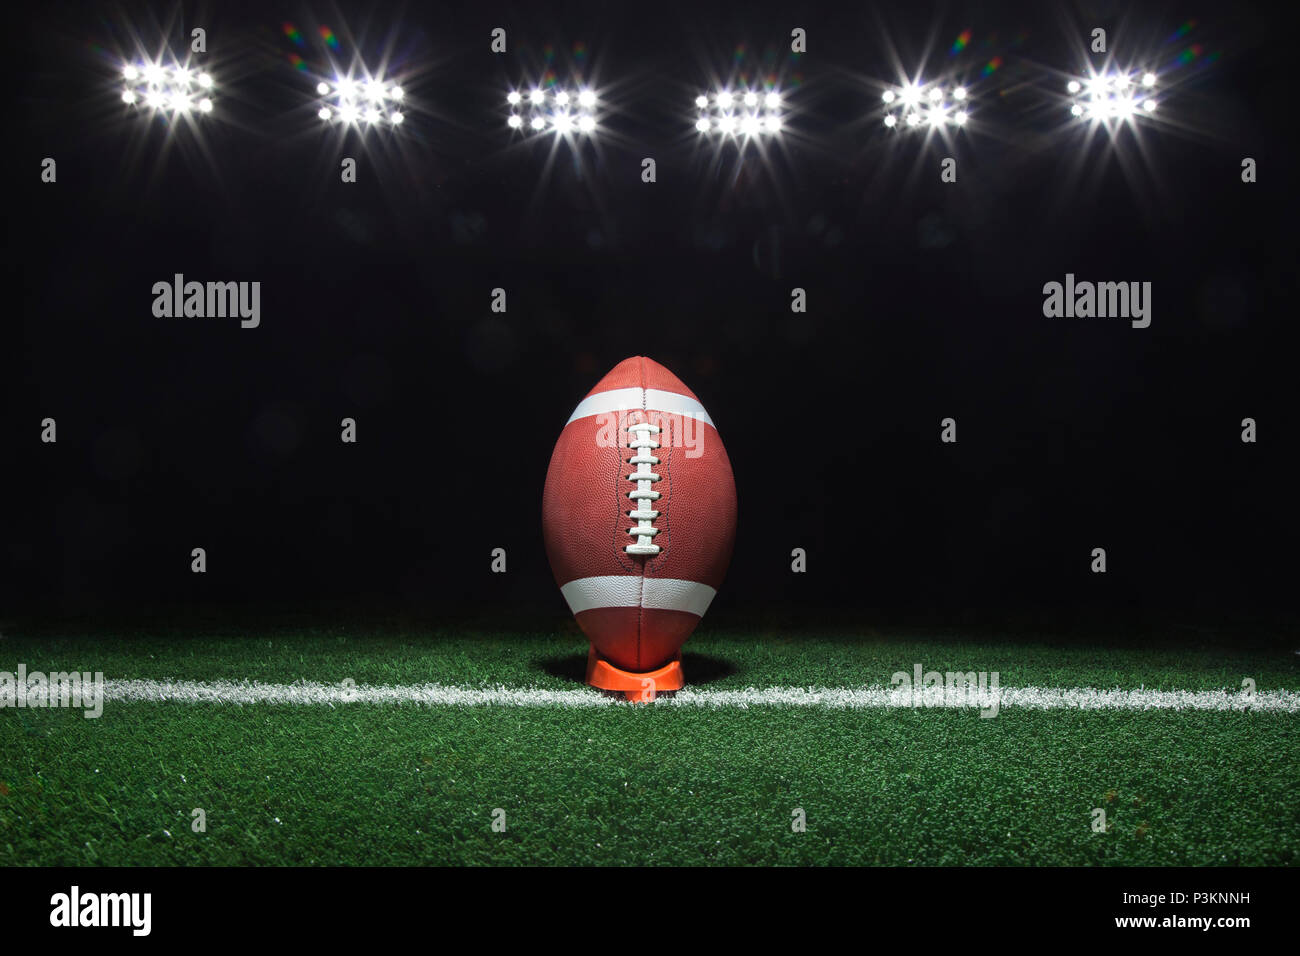 Una pelota de fútbol en una t en una yarda línea bajo luces de noche Foto de stock